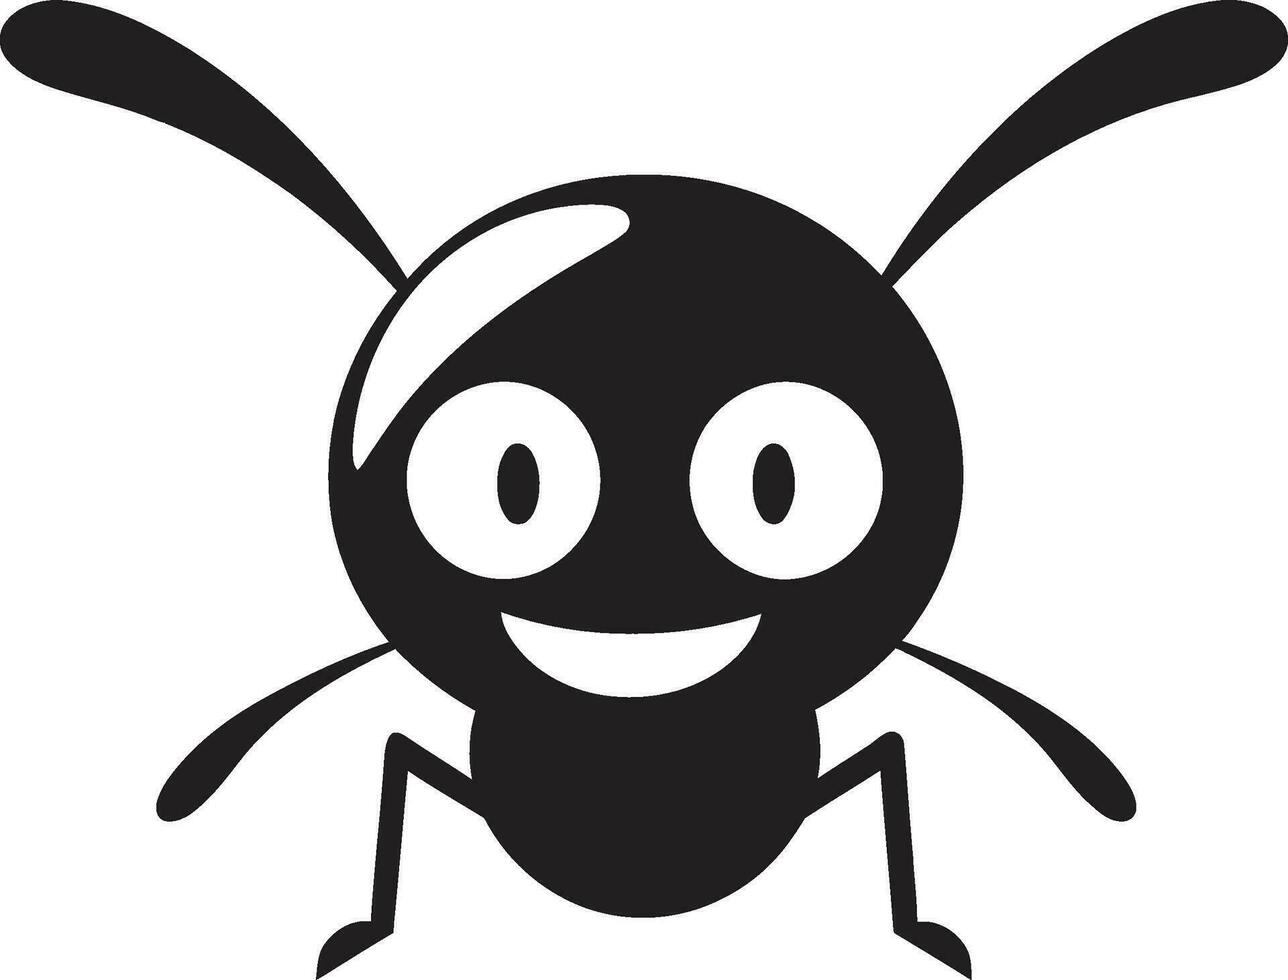 ikoniska svart myra en vektor logotyp av styrka elegant svart vektor myra logotyp en påstående av stil